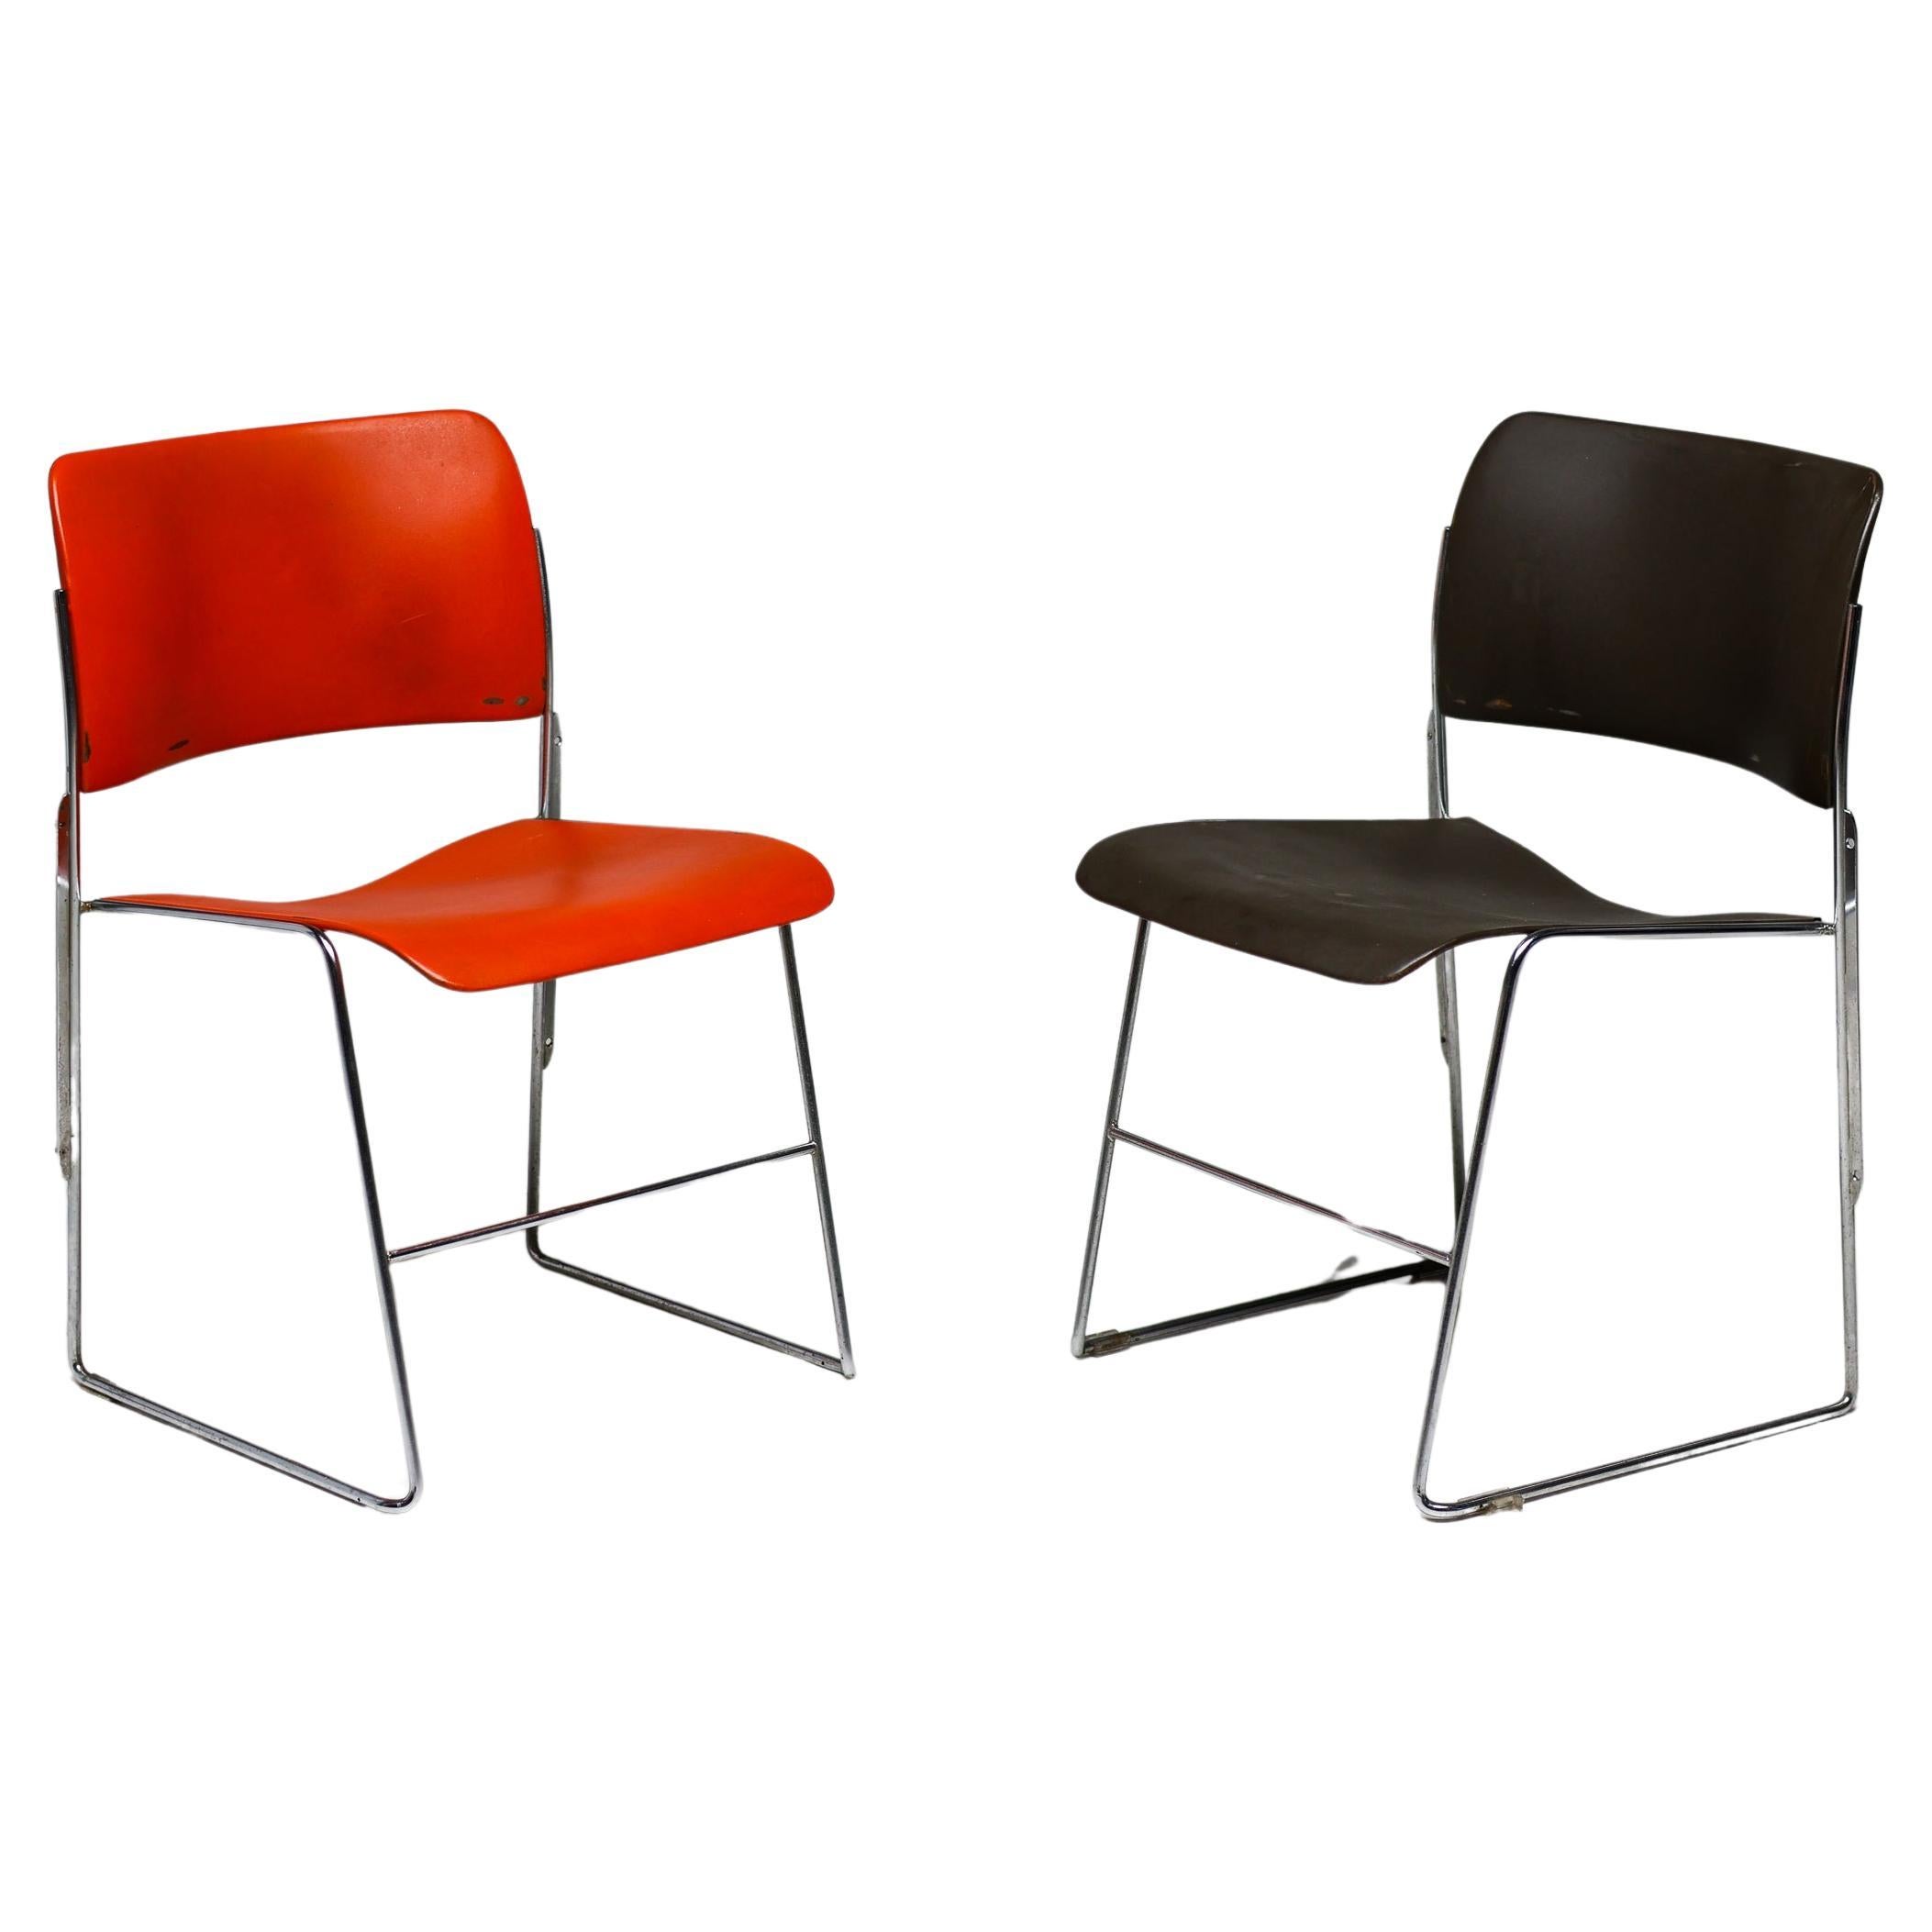 Zweiundfünfzig rote und braune stapelbare 40/4-Stühle von David Rowland - OF USA